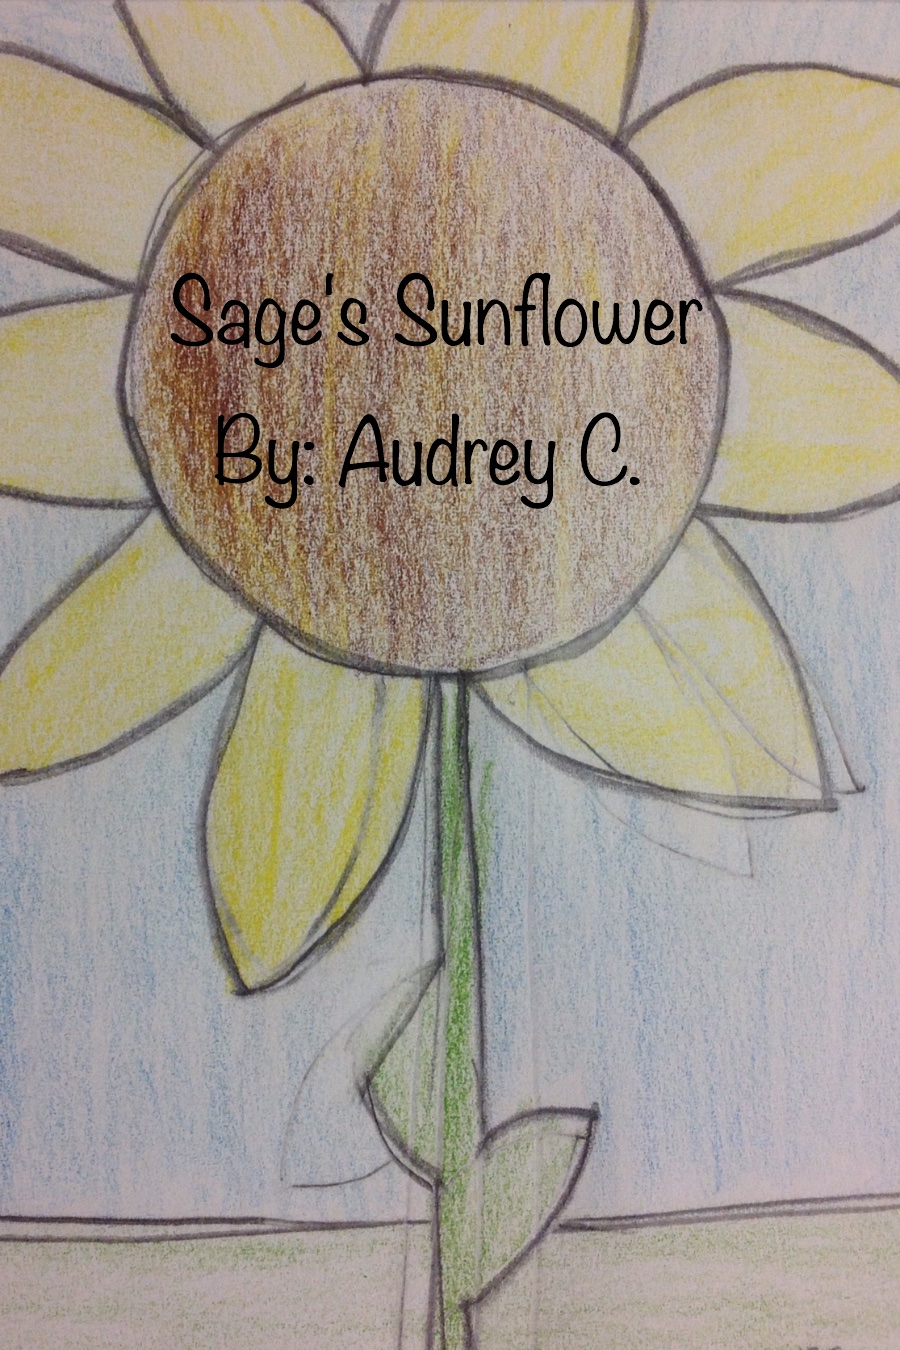 Sage’s Sunflower by Audrey C